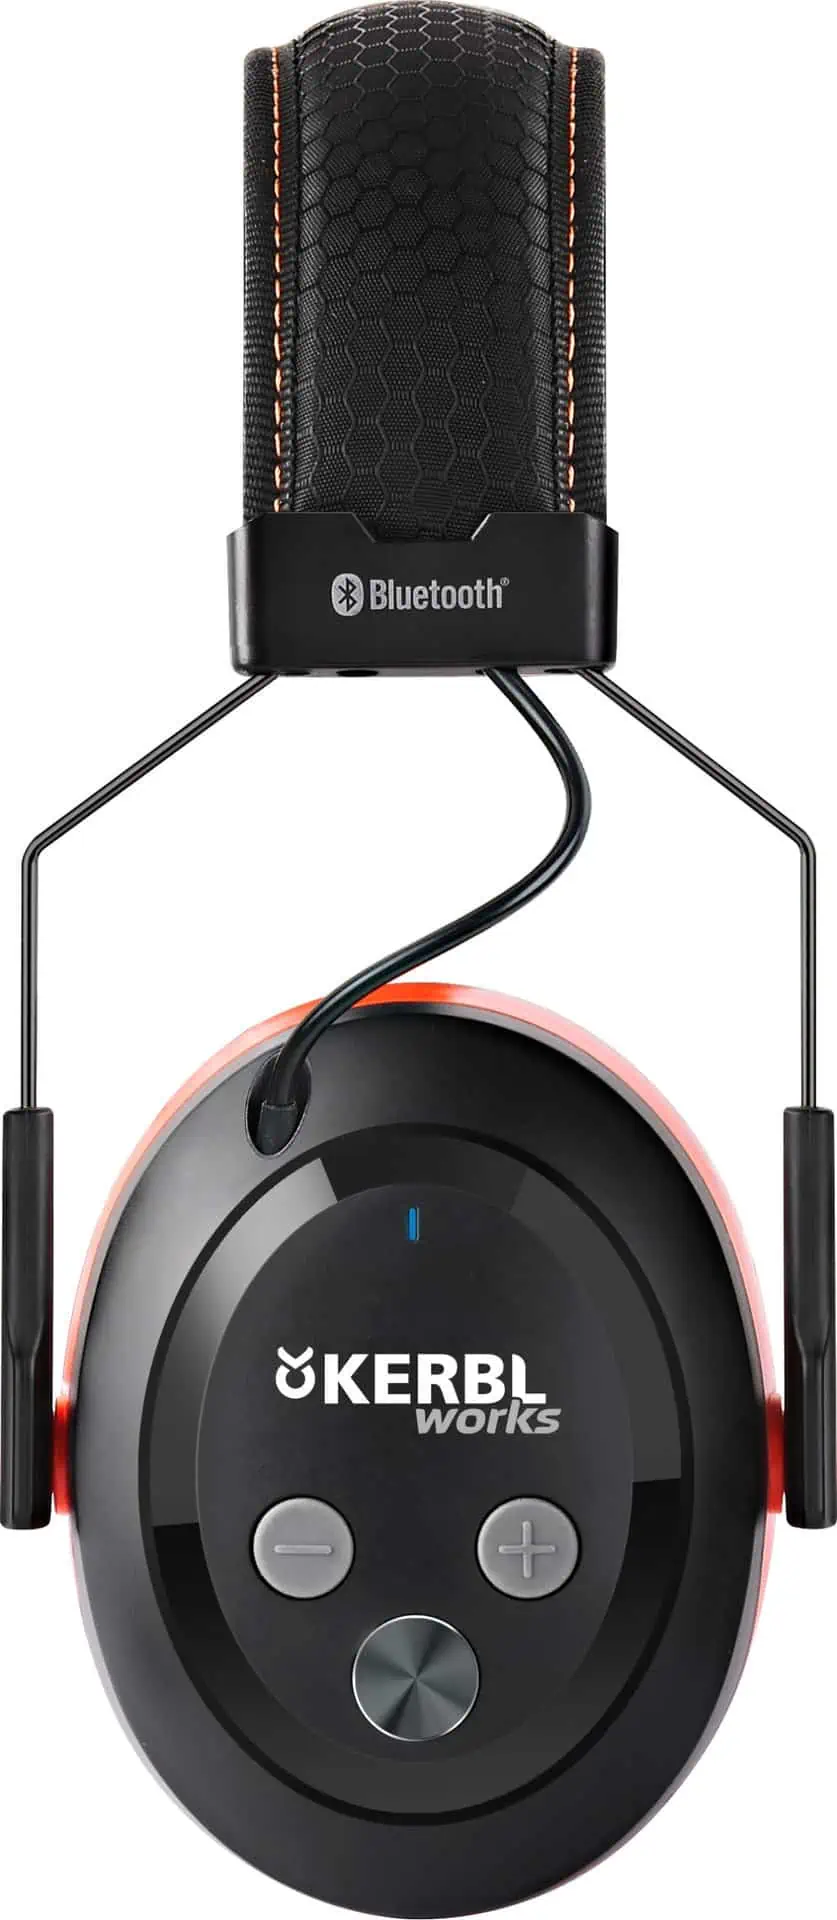 Brusreducerande headset med Bluetooth